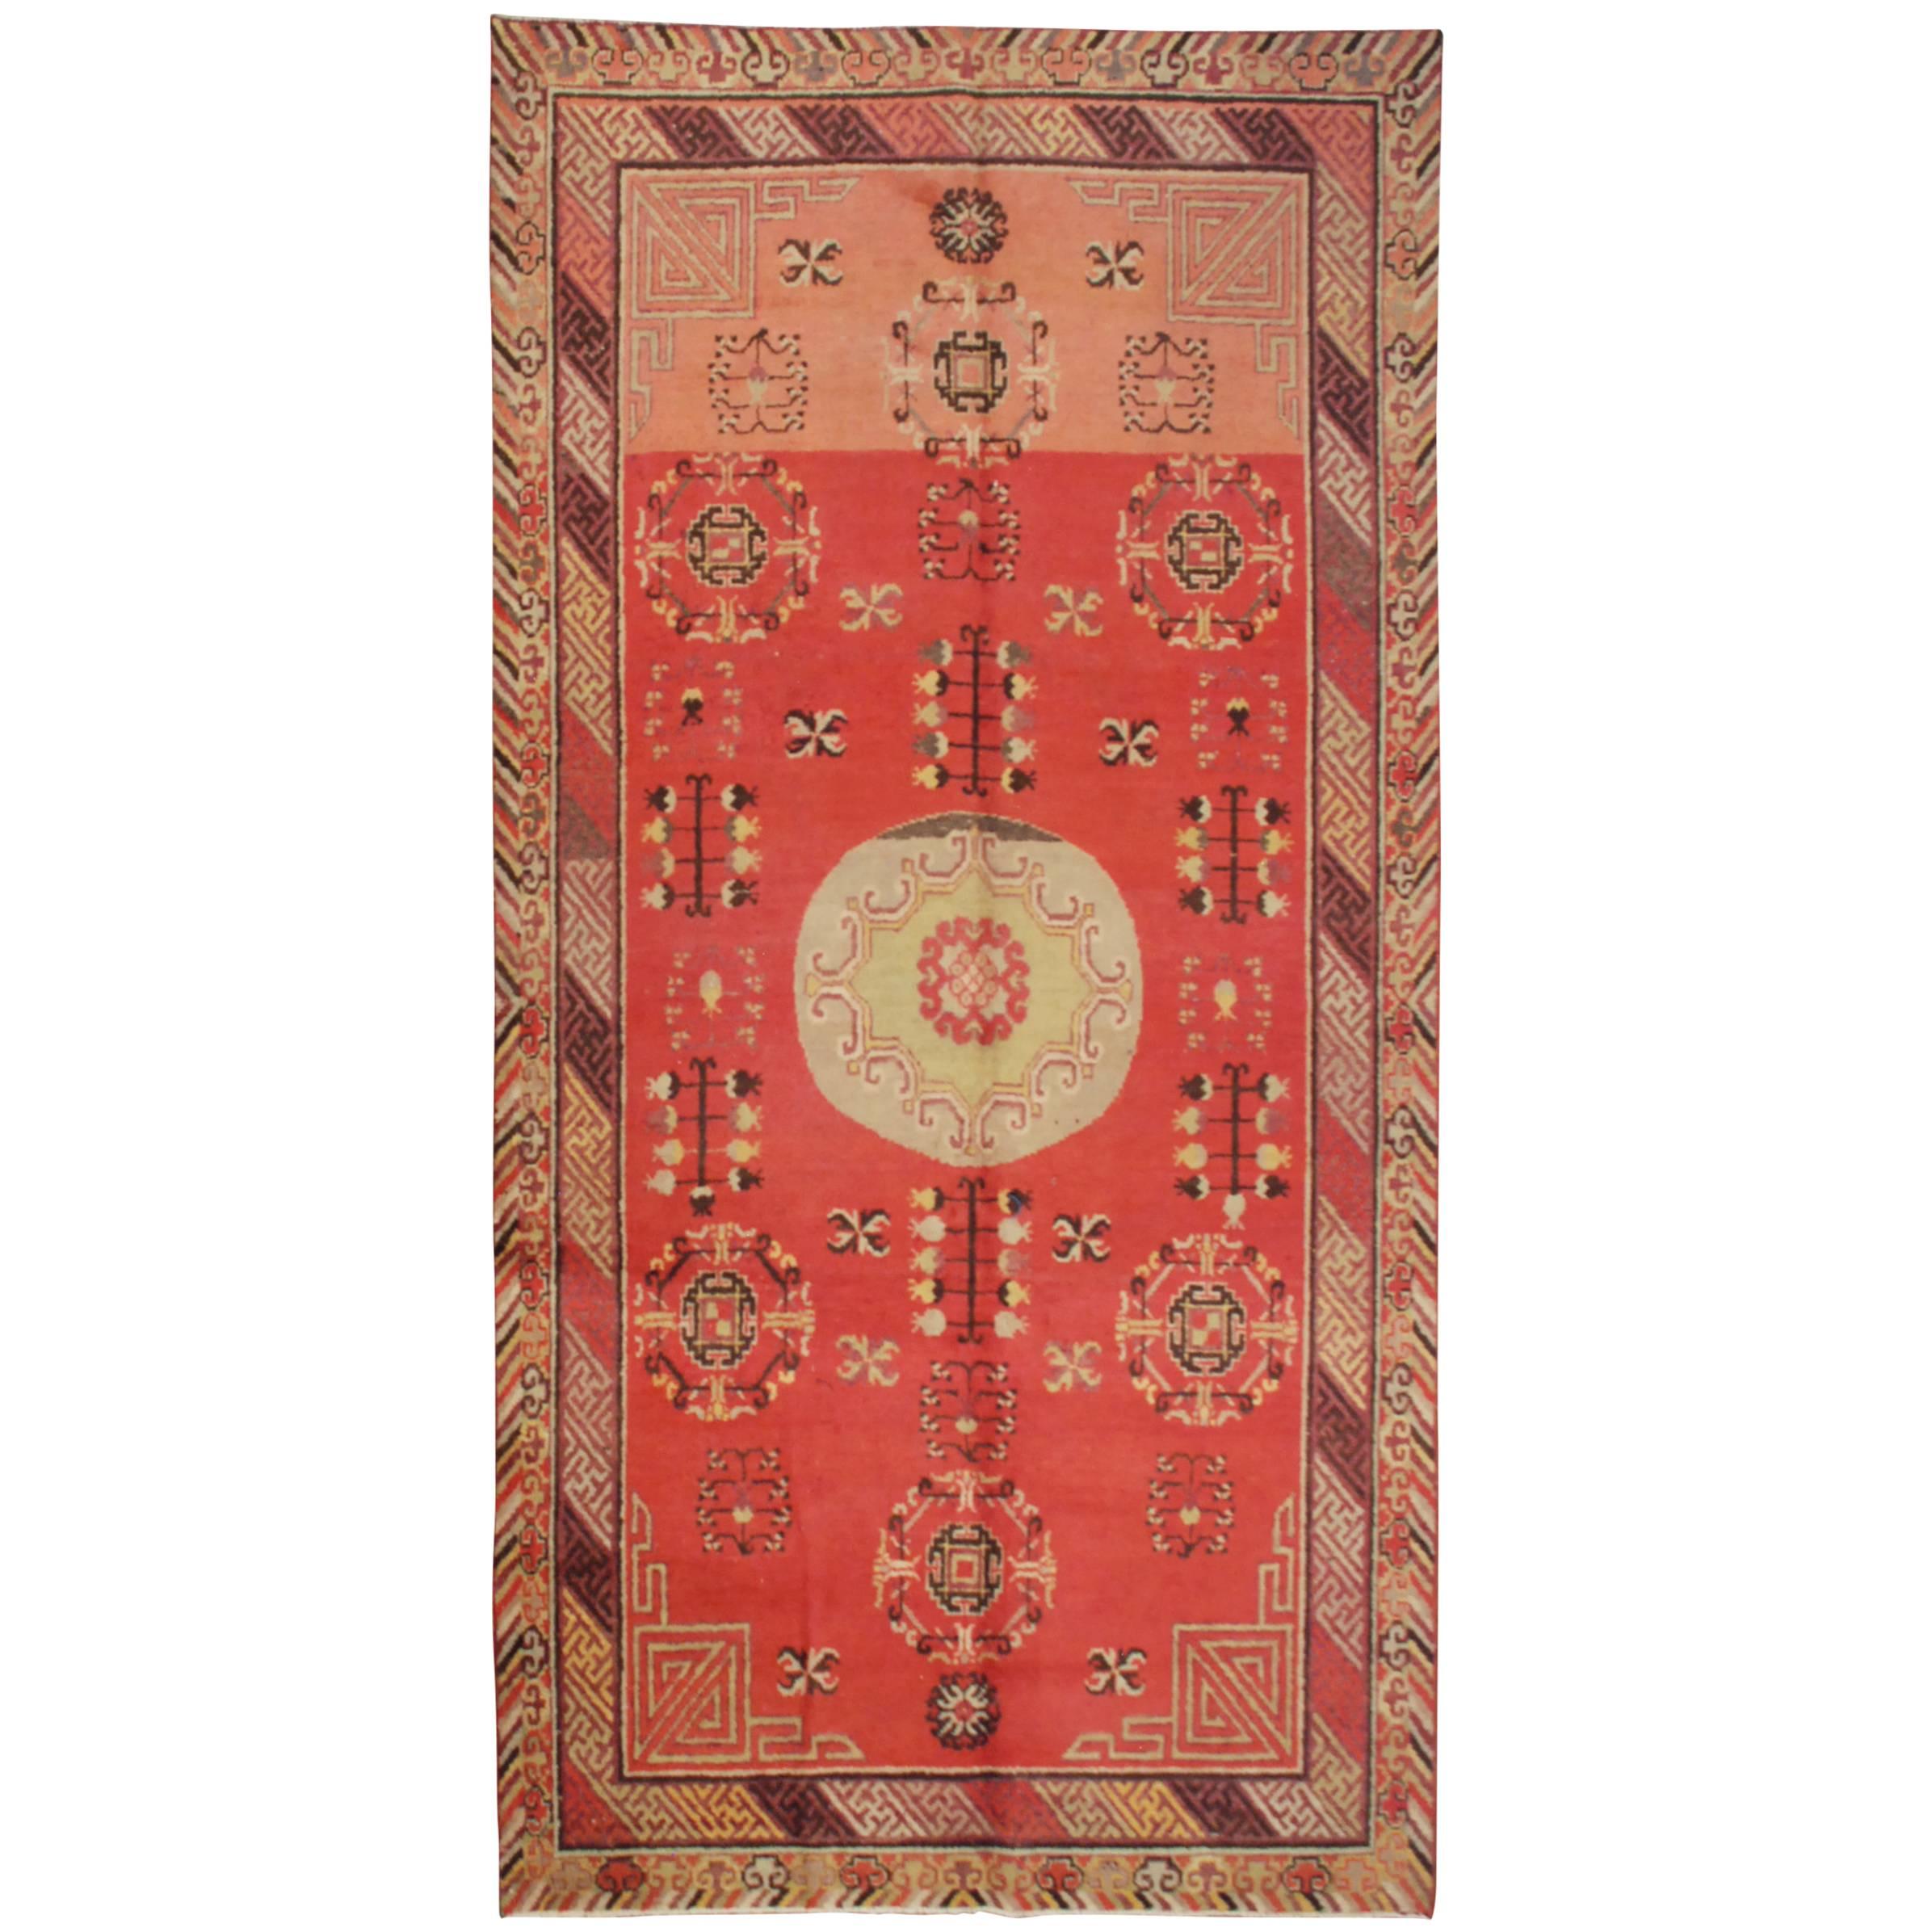 Antique Central Asian Khotan Rug